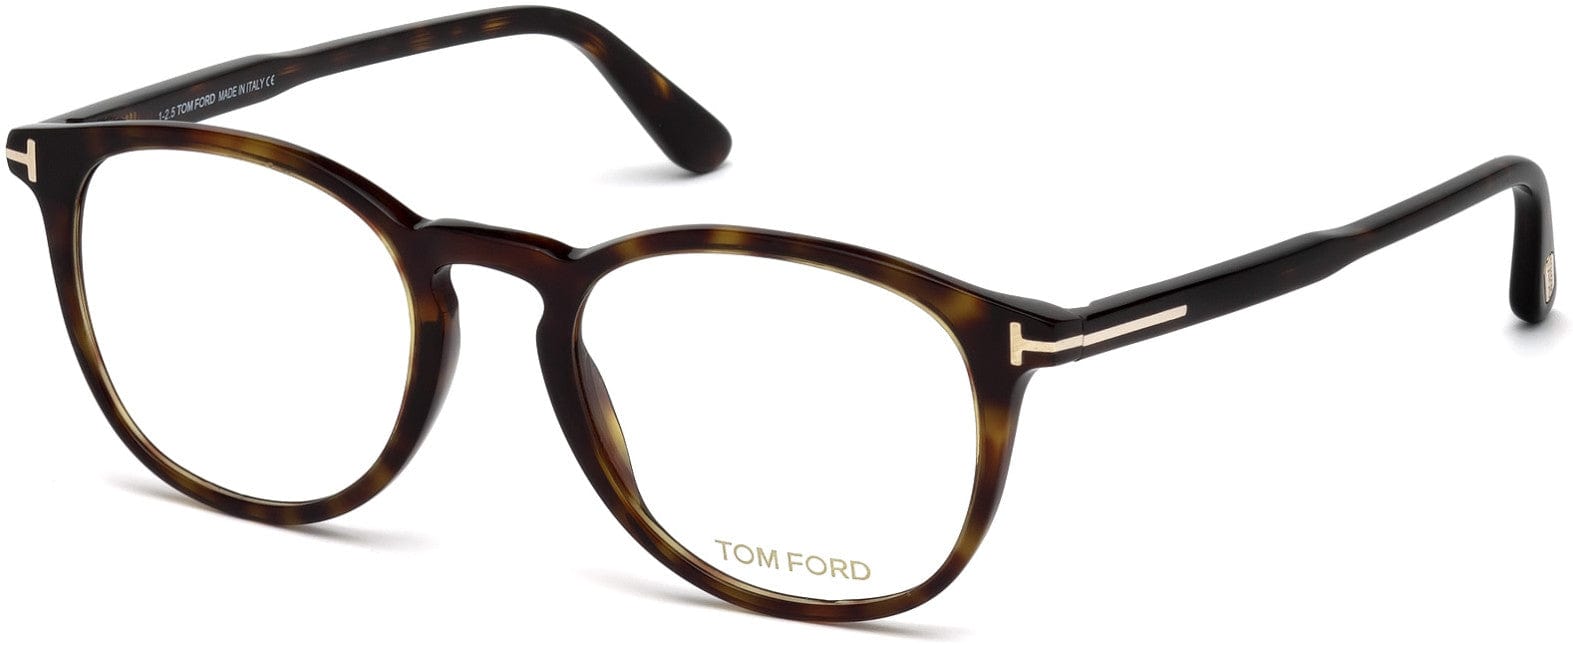 Tom Ford FT5401 Round Eyeglasses 052-052 - Shiny Classic Dark Havana, Shiny Rose Gold "t" Logo